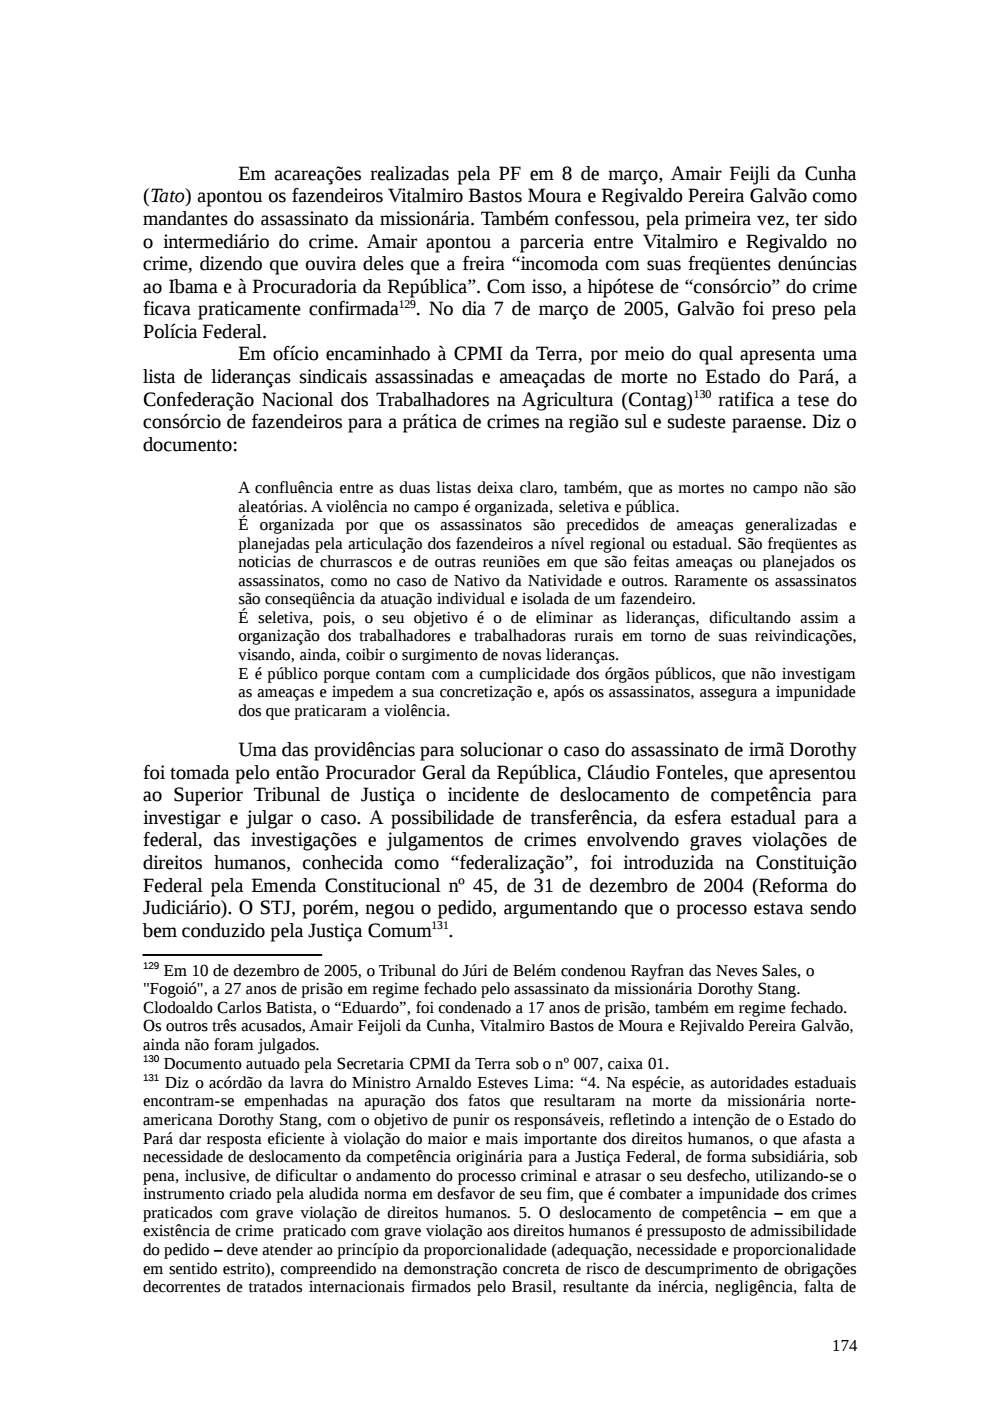 Page 174 from Relatório final da comissão